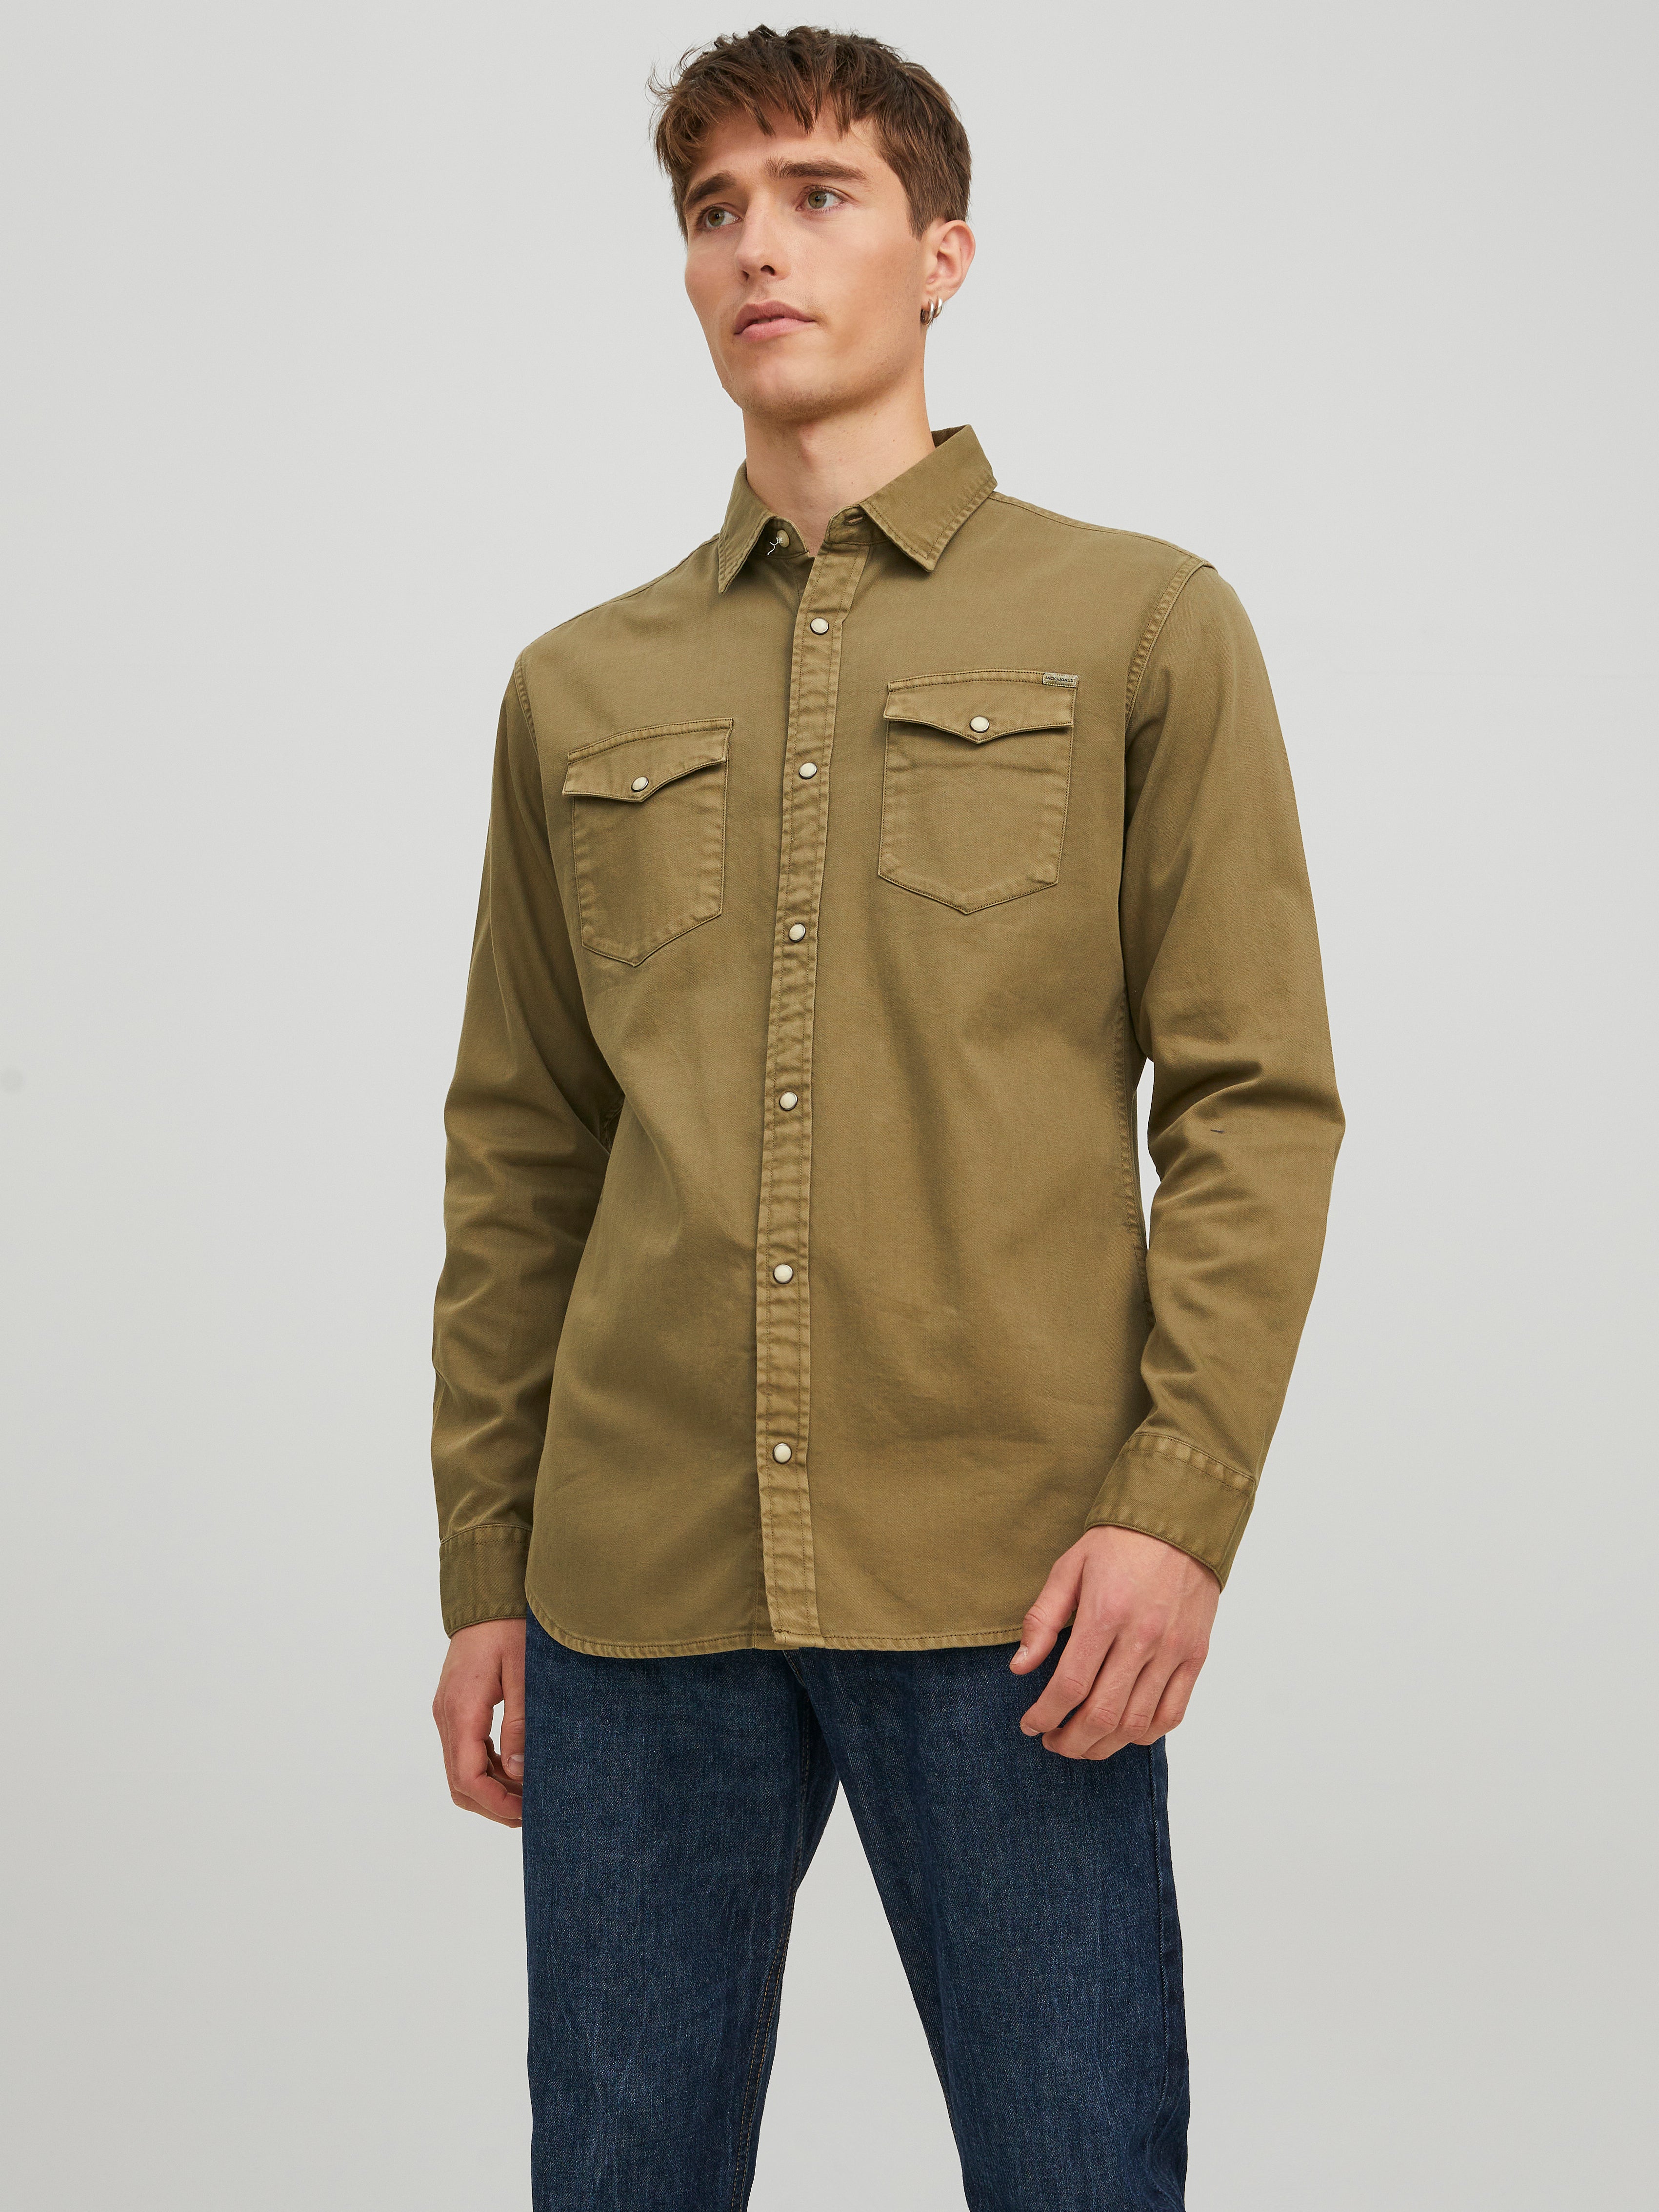 Buy Green Full Sleeves Shirt for Men